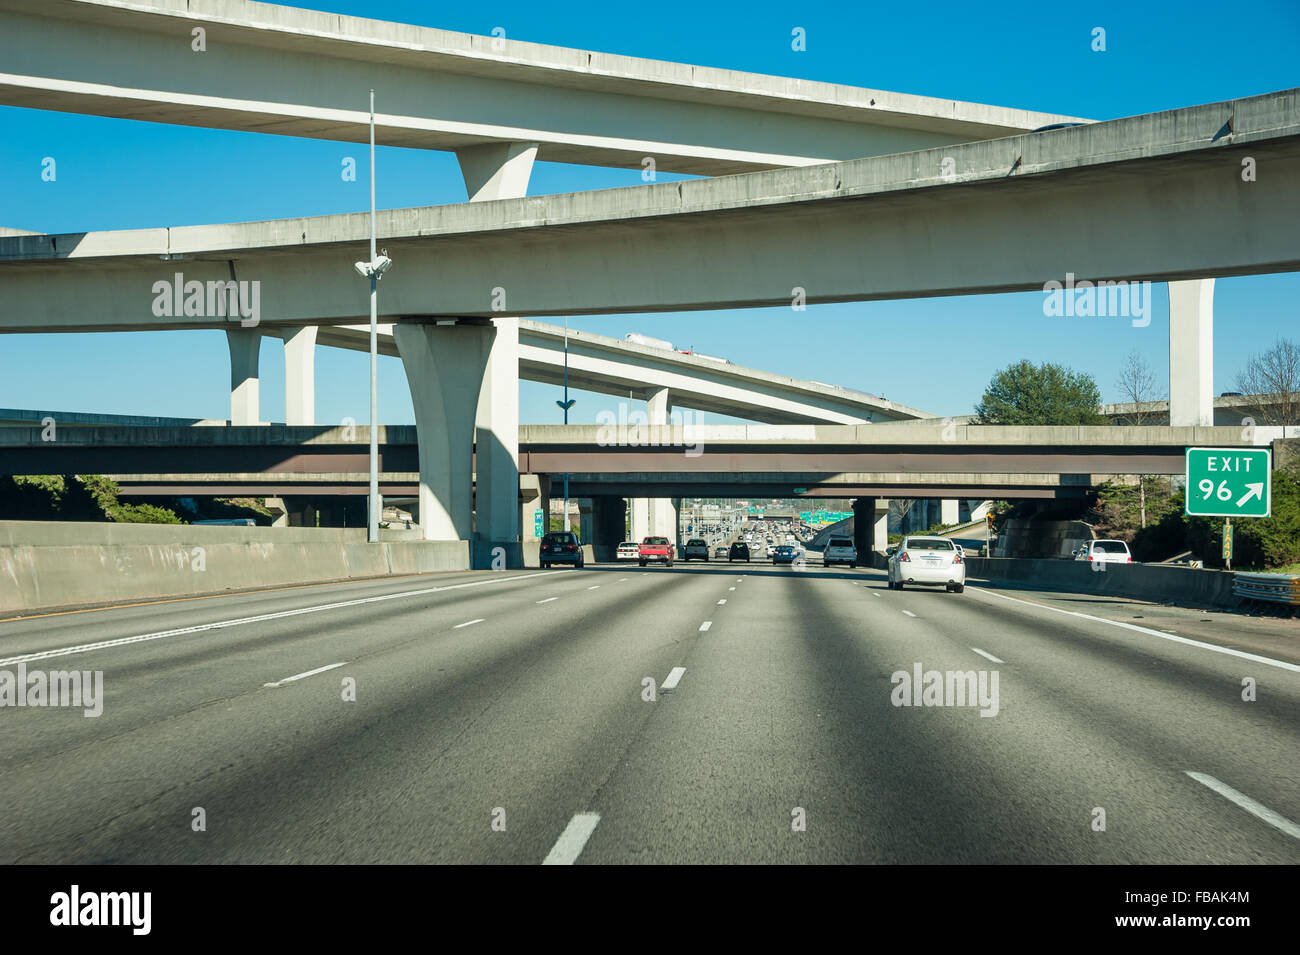 Atlanta, Georgia Spaghetti Junction, wo i-85 und i-285 kreuzen sich Wege inmitten ein Durcheinander von interstate Ausfahrten und Anschlüsse. USA. Stockfoto